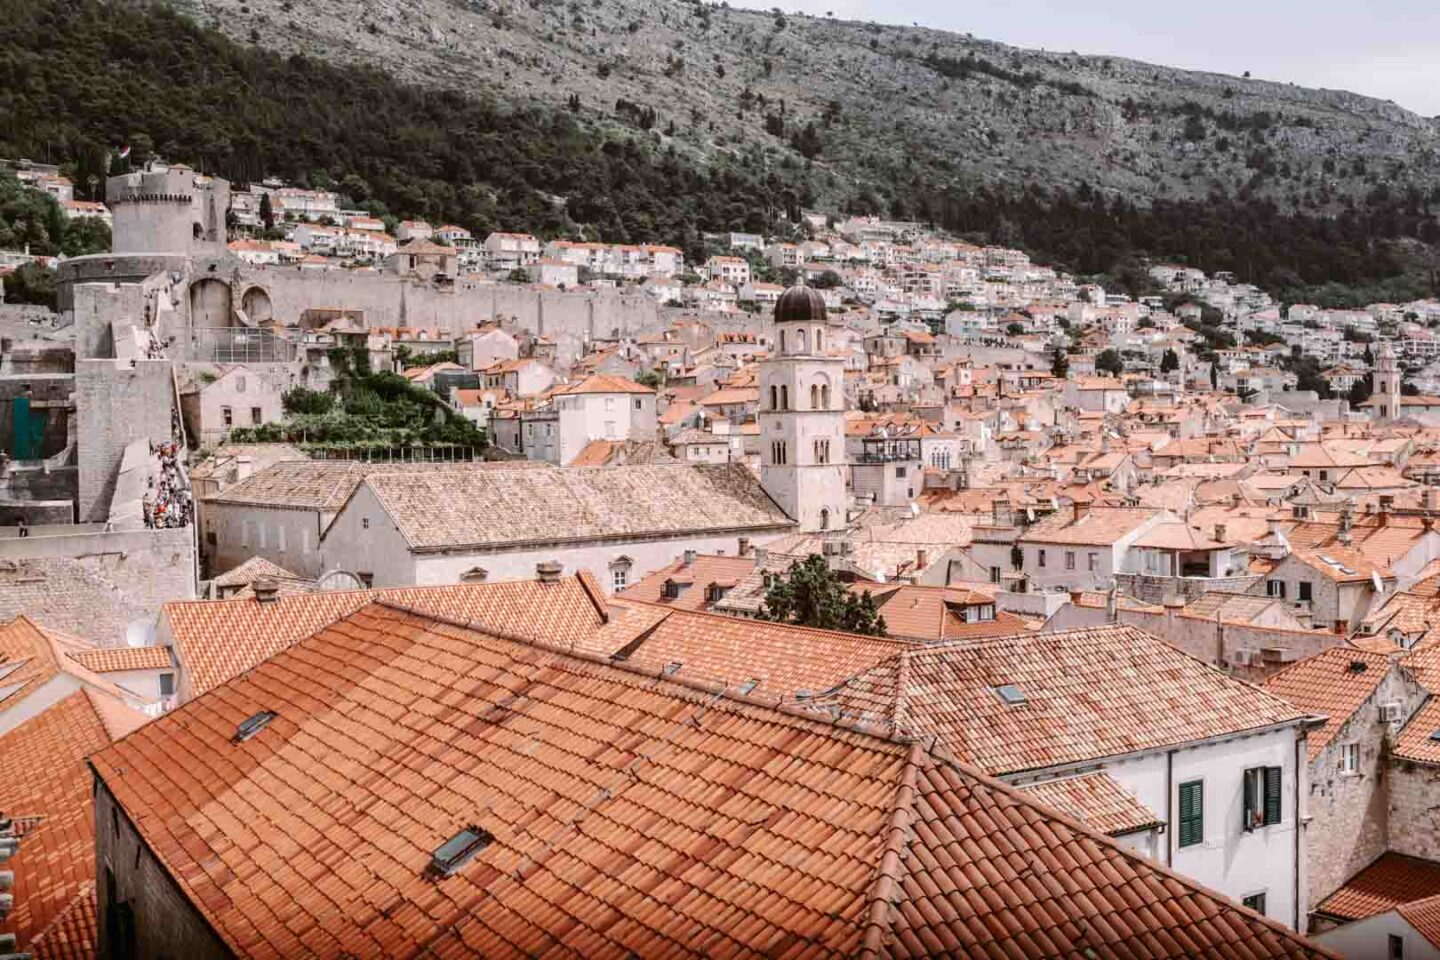 The orange architecture in Dubrovnik